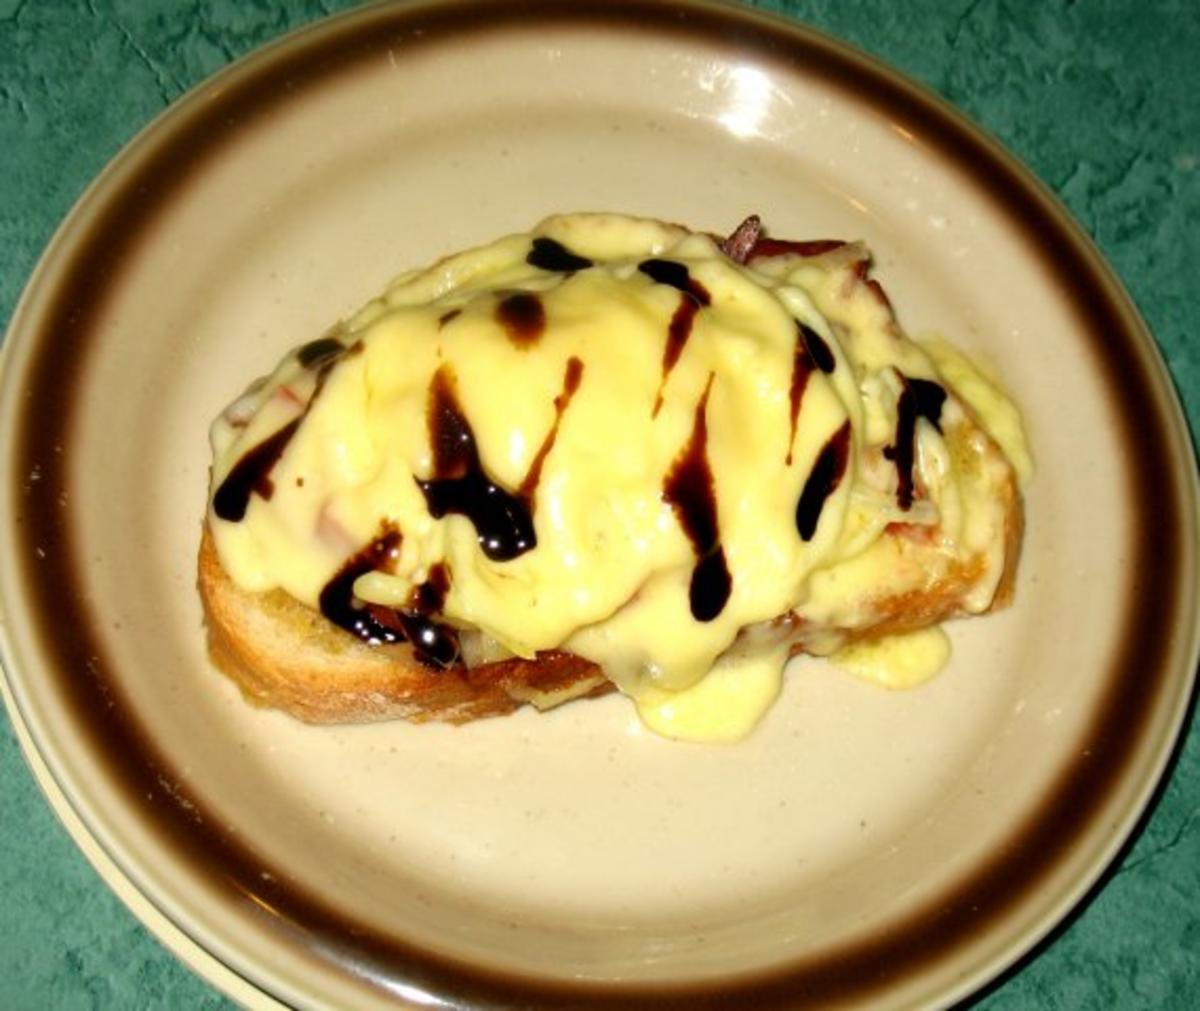 Snack/Brot - Toast mit Tomaten, Zwiebeln und rohem Schinken - Rezept - Bild Nr. 5